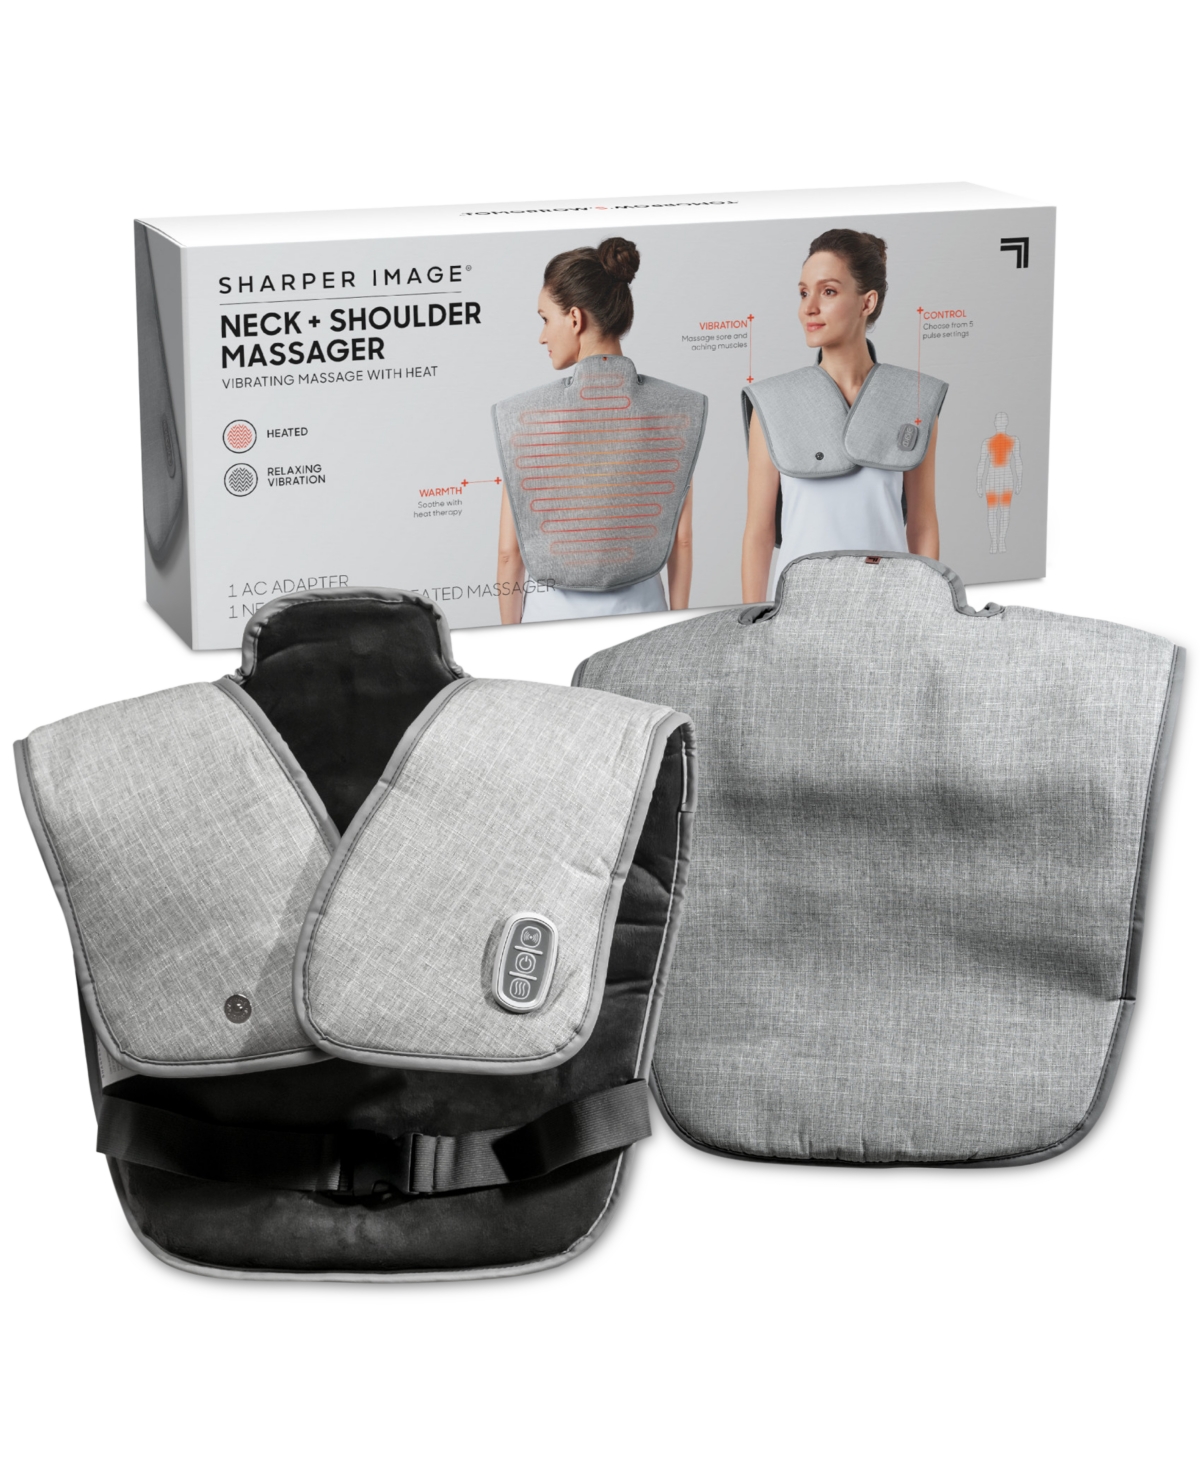 Sharper Image Heated Neck & Shoulder Massager In Grey